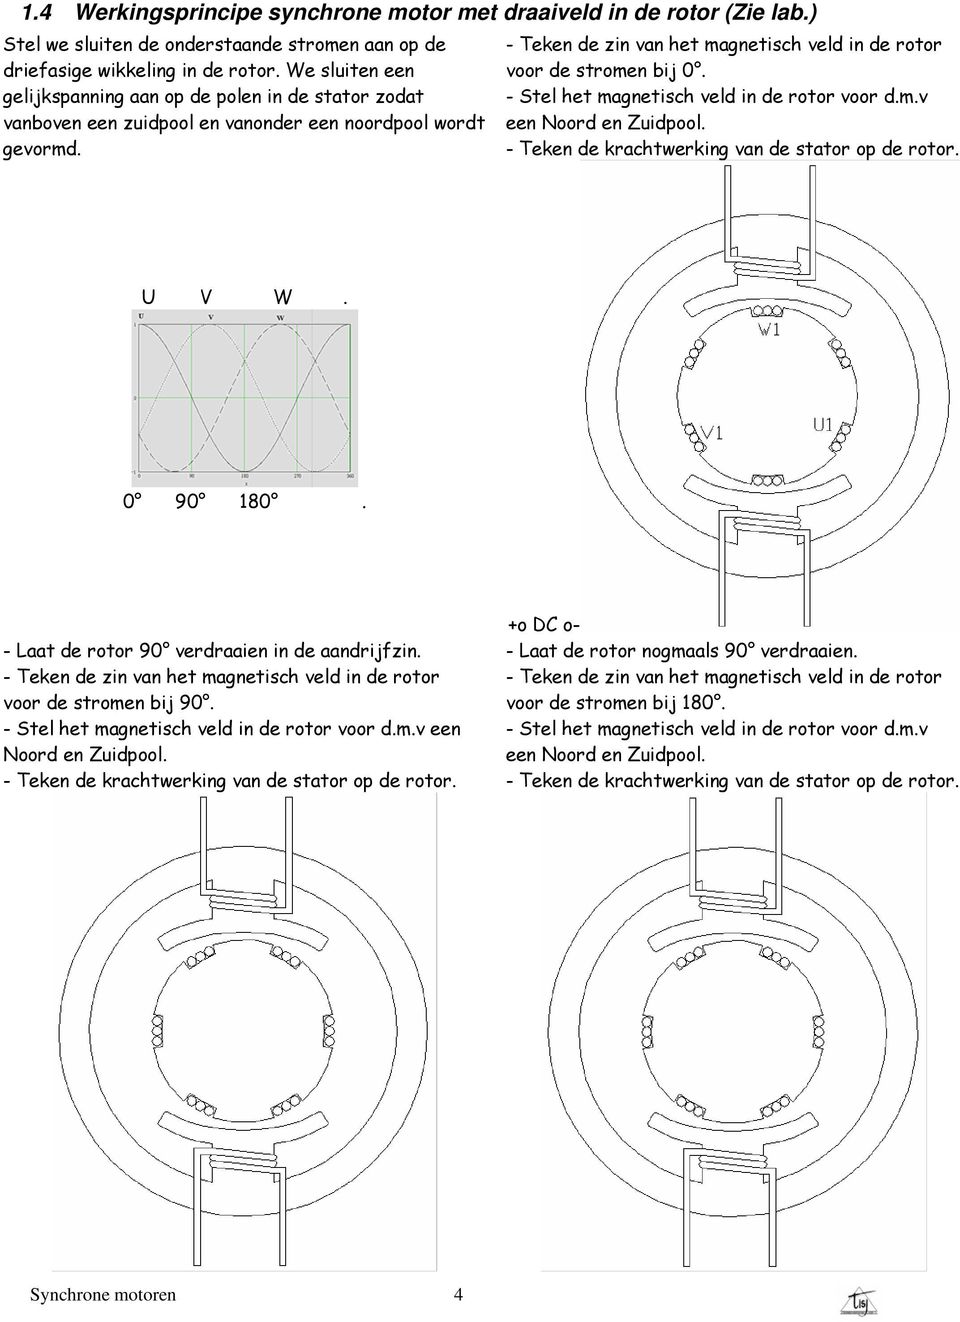 - Teken de zin van het magnetisch veld in de rotor voor de stromen bij 0. - Stel het magnetisch veld in de rotor voor d.m.v een Noord en Zuidpool. - Teken de krachtwerking van de stator op de rotor.